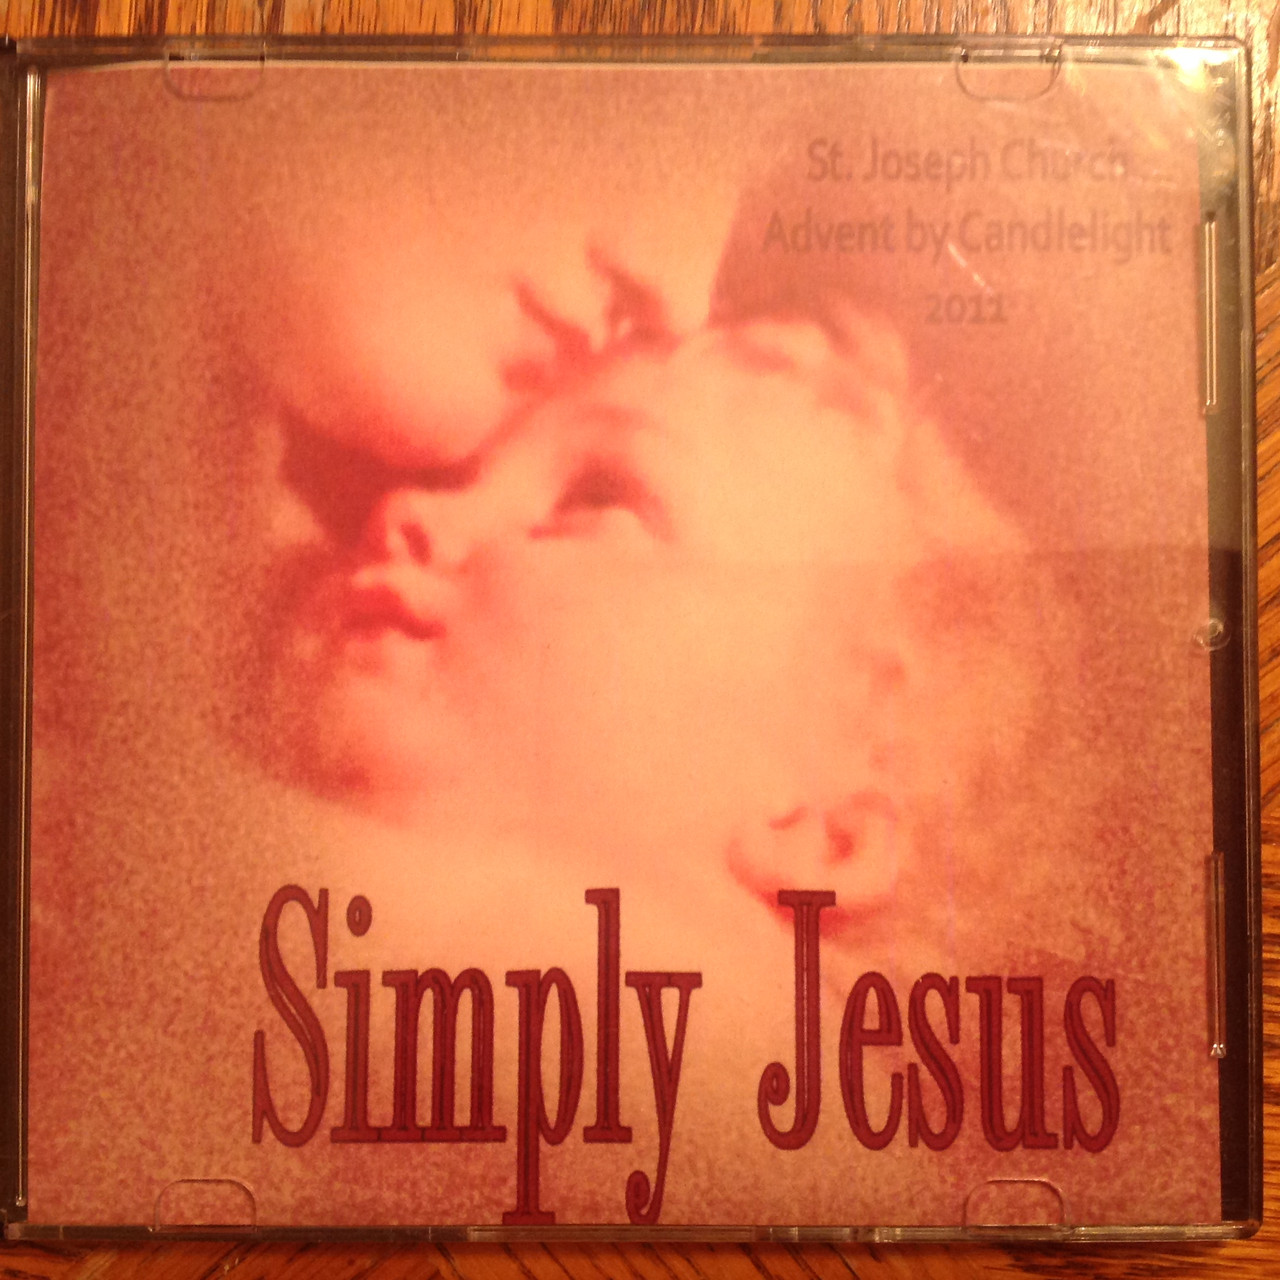 Simply Jesus CD